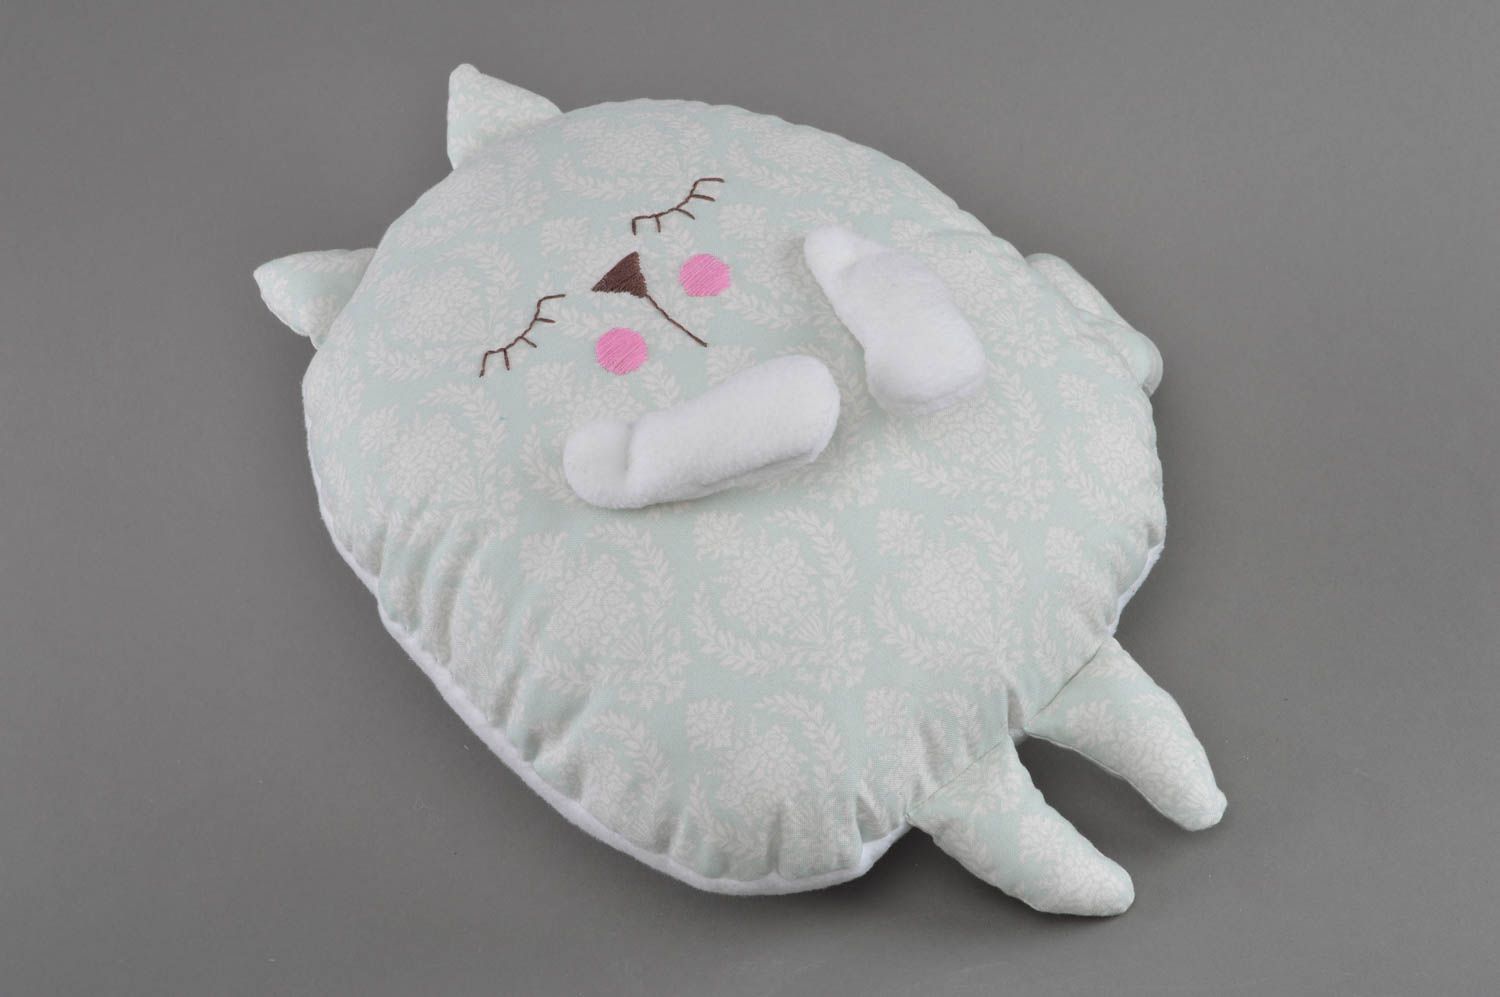 Мягкая игрушка подушка серого цвета в виде спящего кота небольшая ручной работы  фото 2